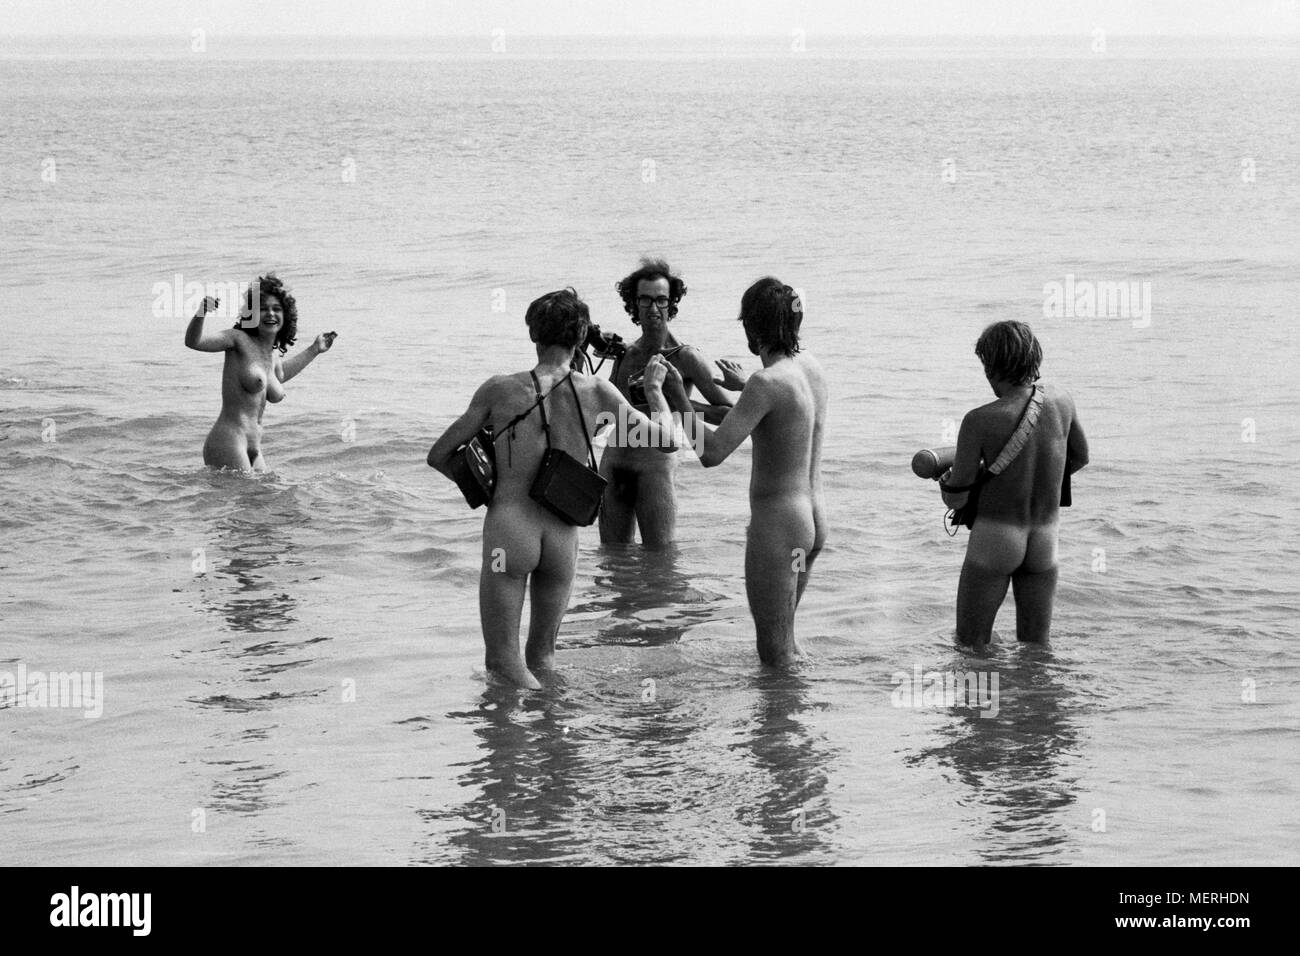 Una troupe televisiva al 1970 Isle of Wight festival pop, riprese hippies skinny dipping nella baia di acqua dolce per un rapporto di notizie. Protezioni Hippy aveva ordinato a tutti i membri della stampa che desiderano accedere alla baia di strip tease se stessi prima di fotografare o filmare, che i più coraggiosi i membri dei media allegramente fatto. Foto Stock